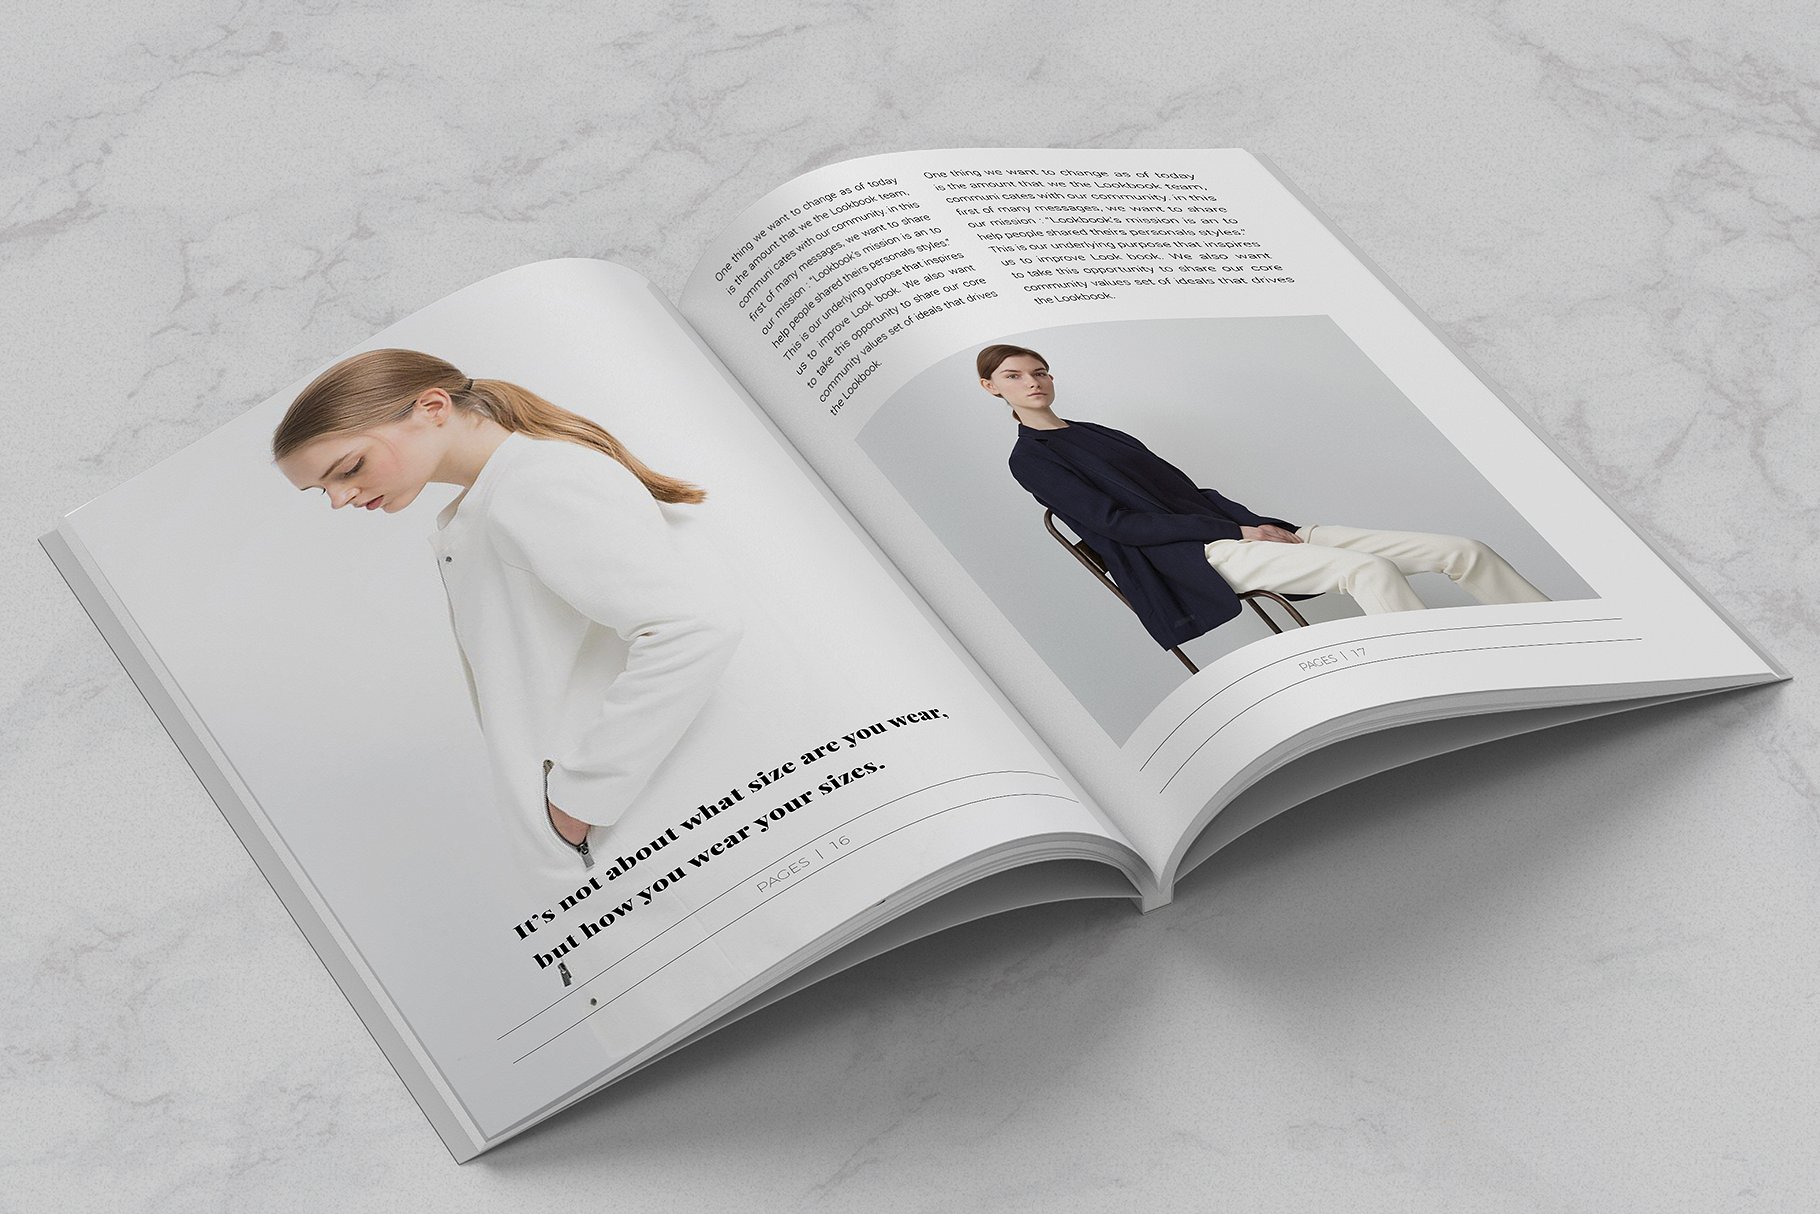 现代极简的服装导购杂志模板下载 BLANKS Minimal Lookbook/Magazines [indd]插图(6)